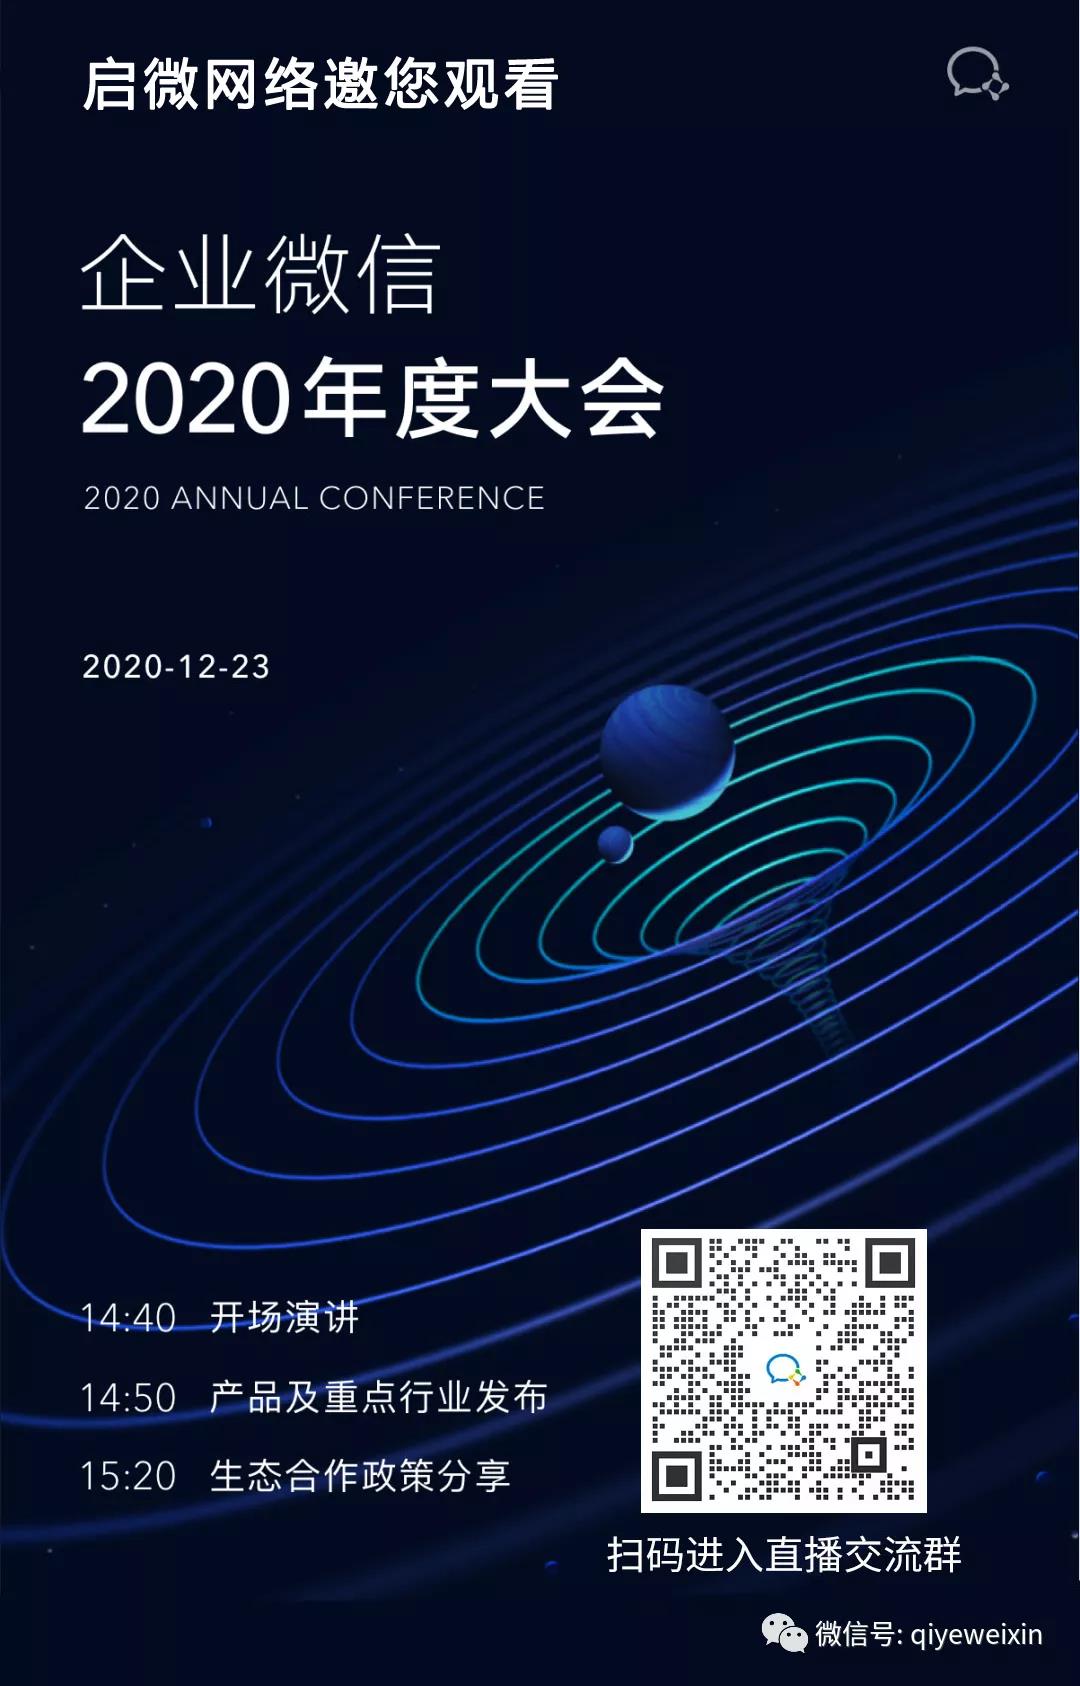 企业微信2020年度大会，邀您观看！